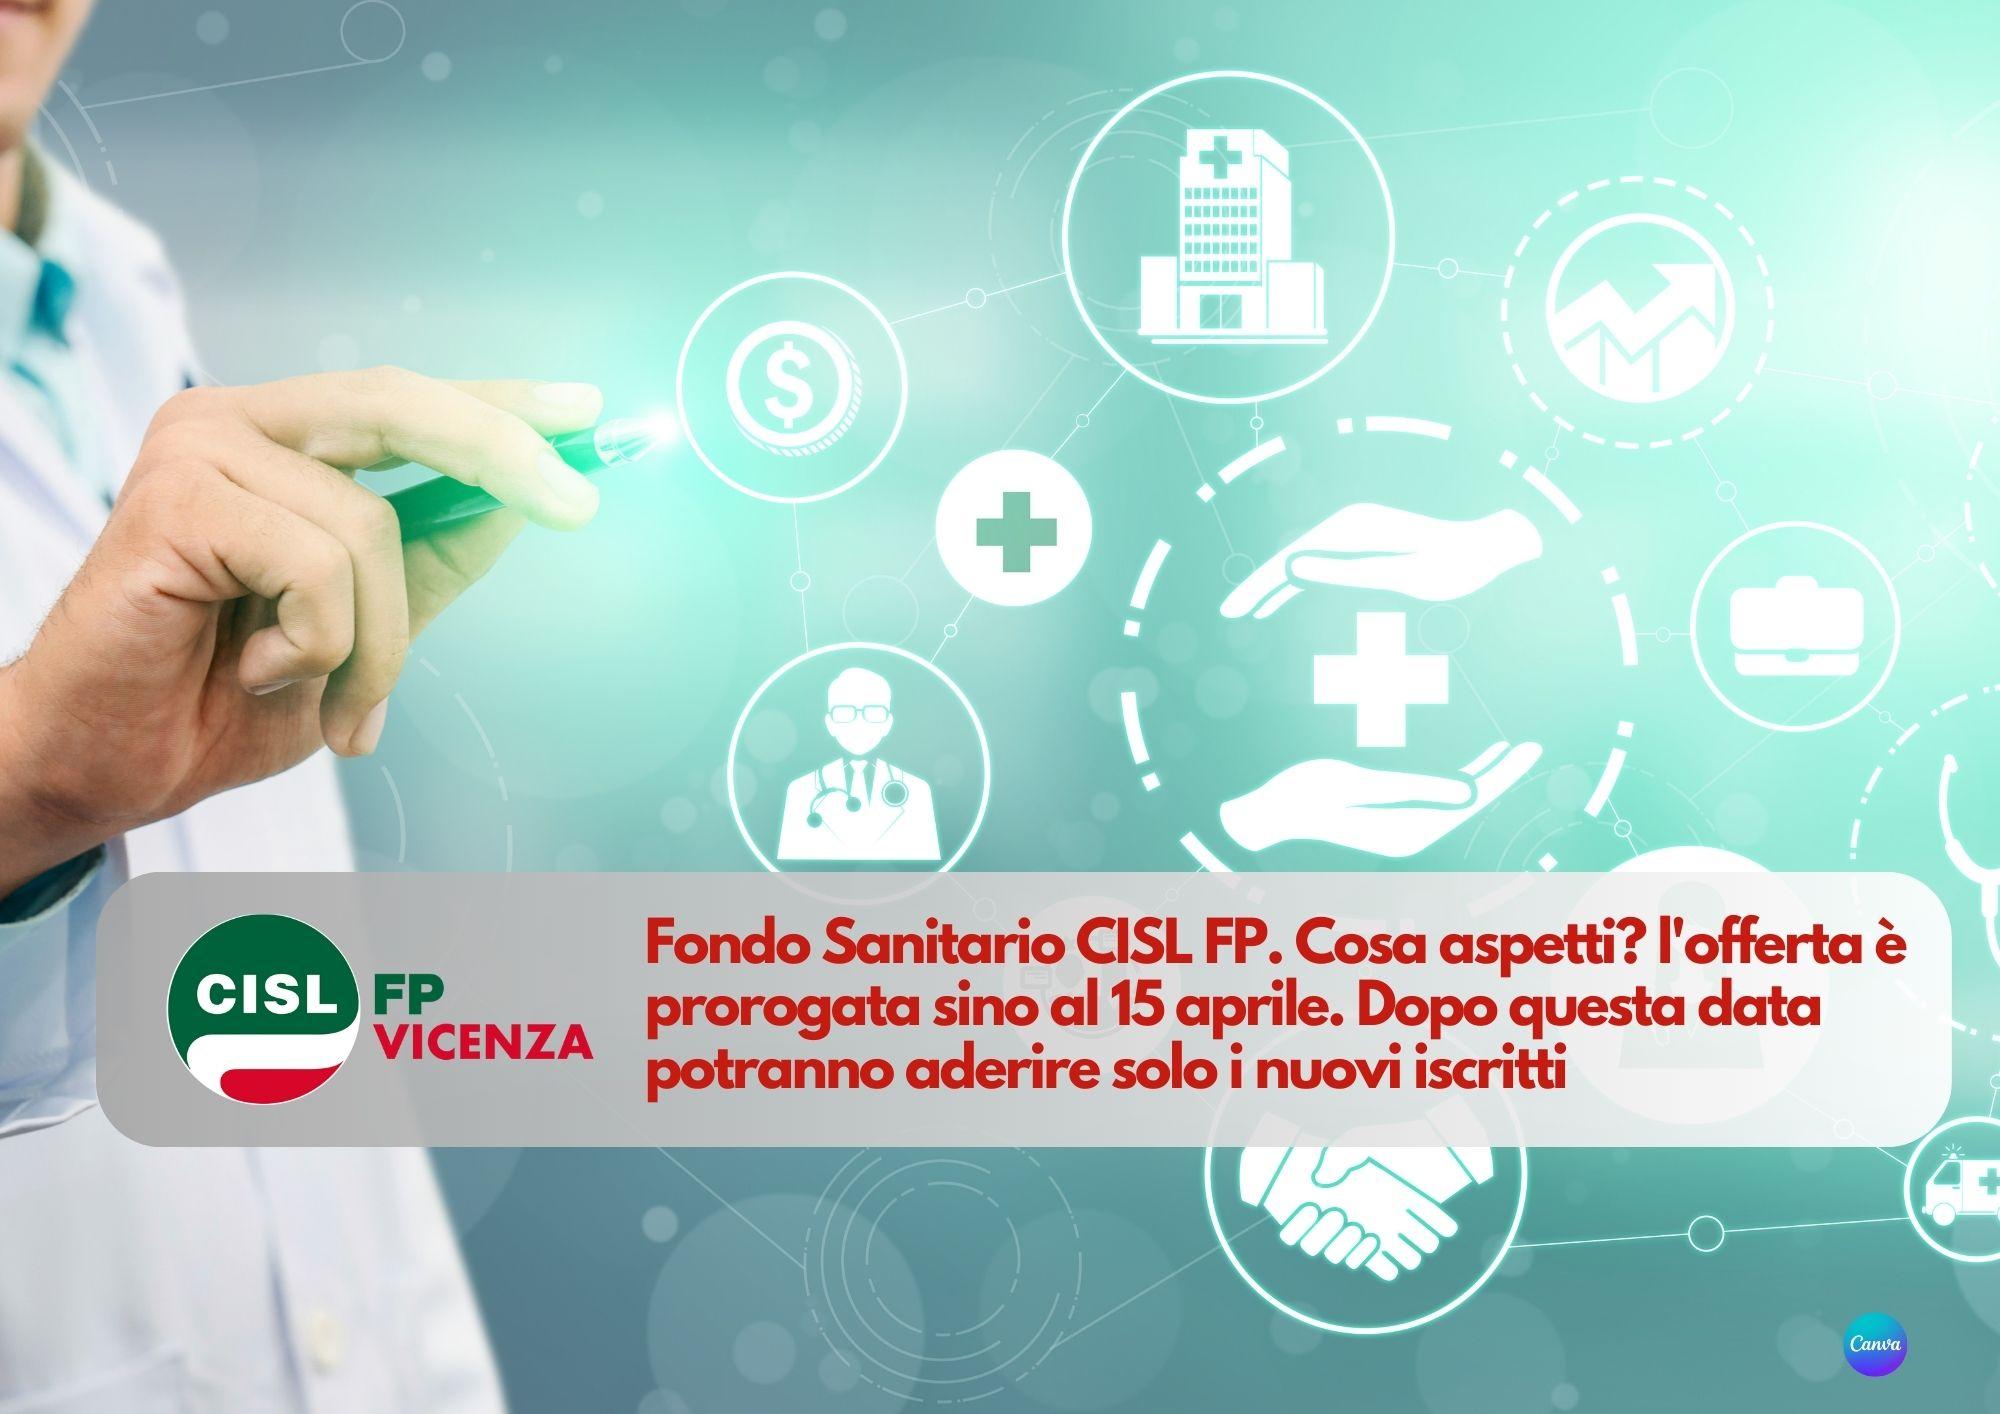 CISL FP Vicenza. Fondo Sanitario CISL FP. Cosa aspetti? l'offerta è prorogata sino al 15 aprile